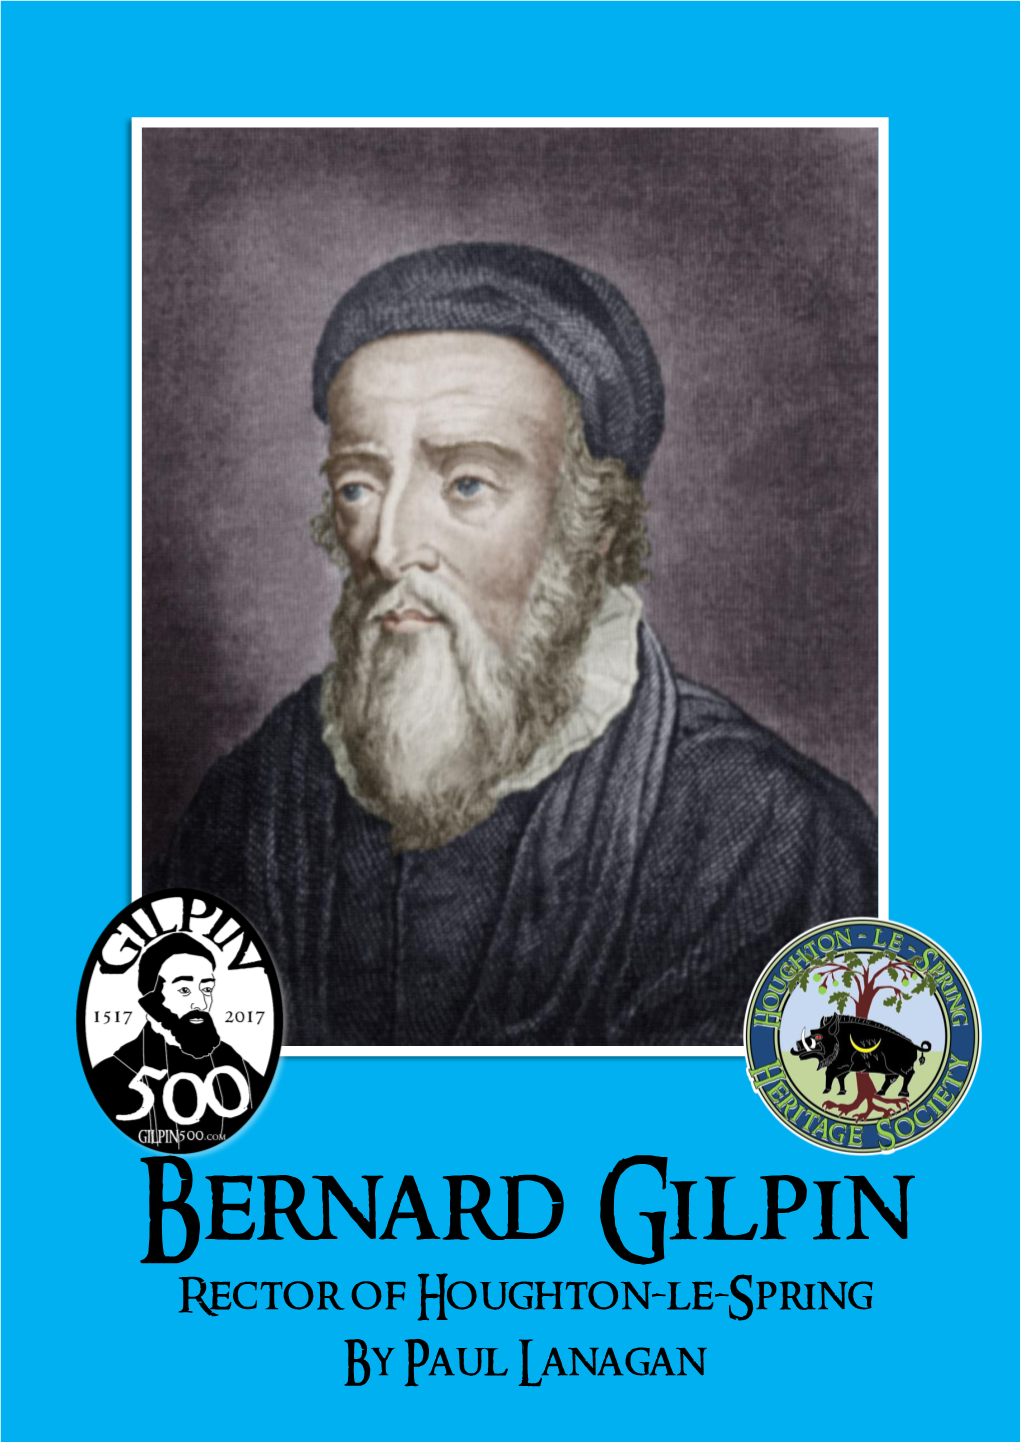 Bernard Gilpin